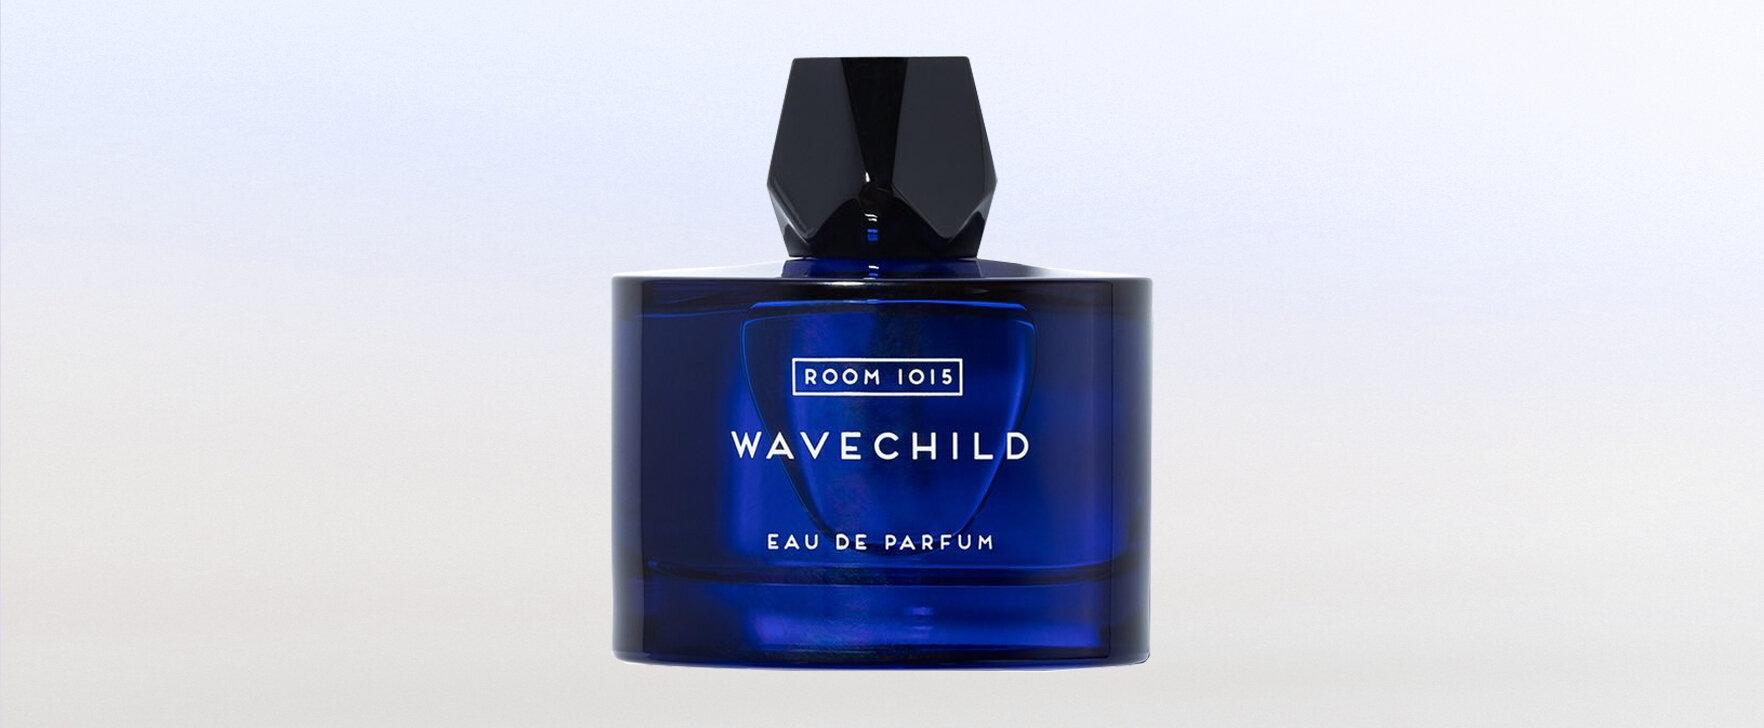 Eine Liebeserklärung an das Surfen: Das neue Eau de Parfum „Wavechild“ von Room 1015